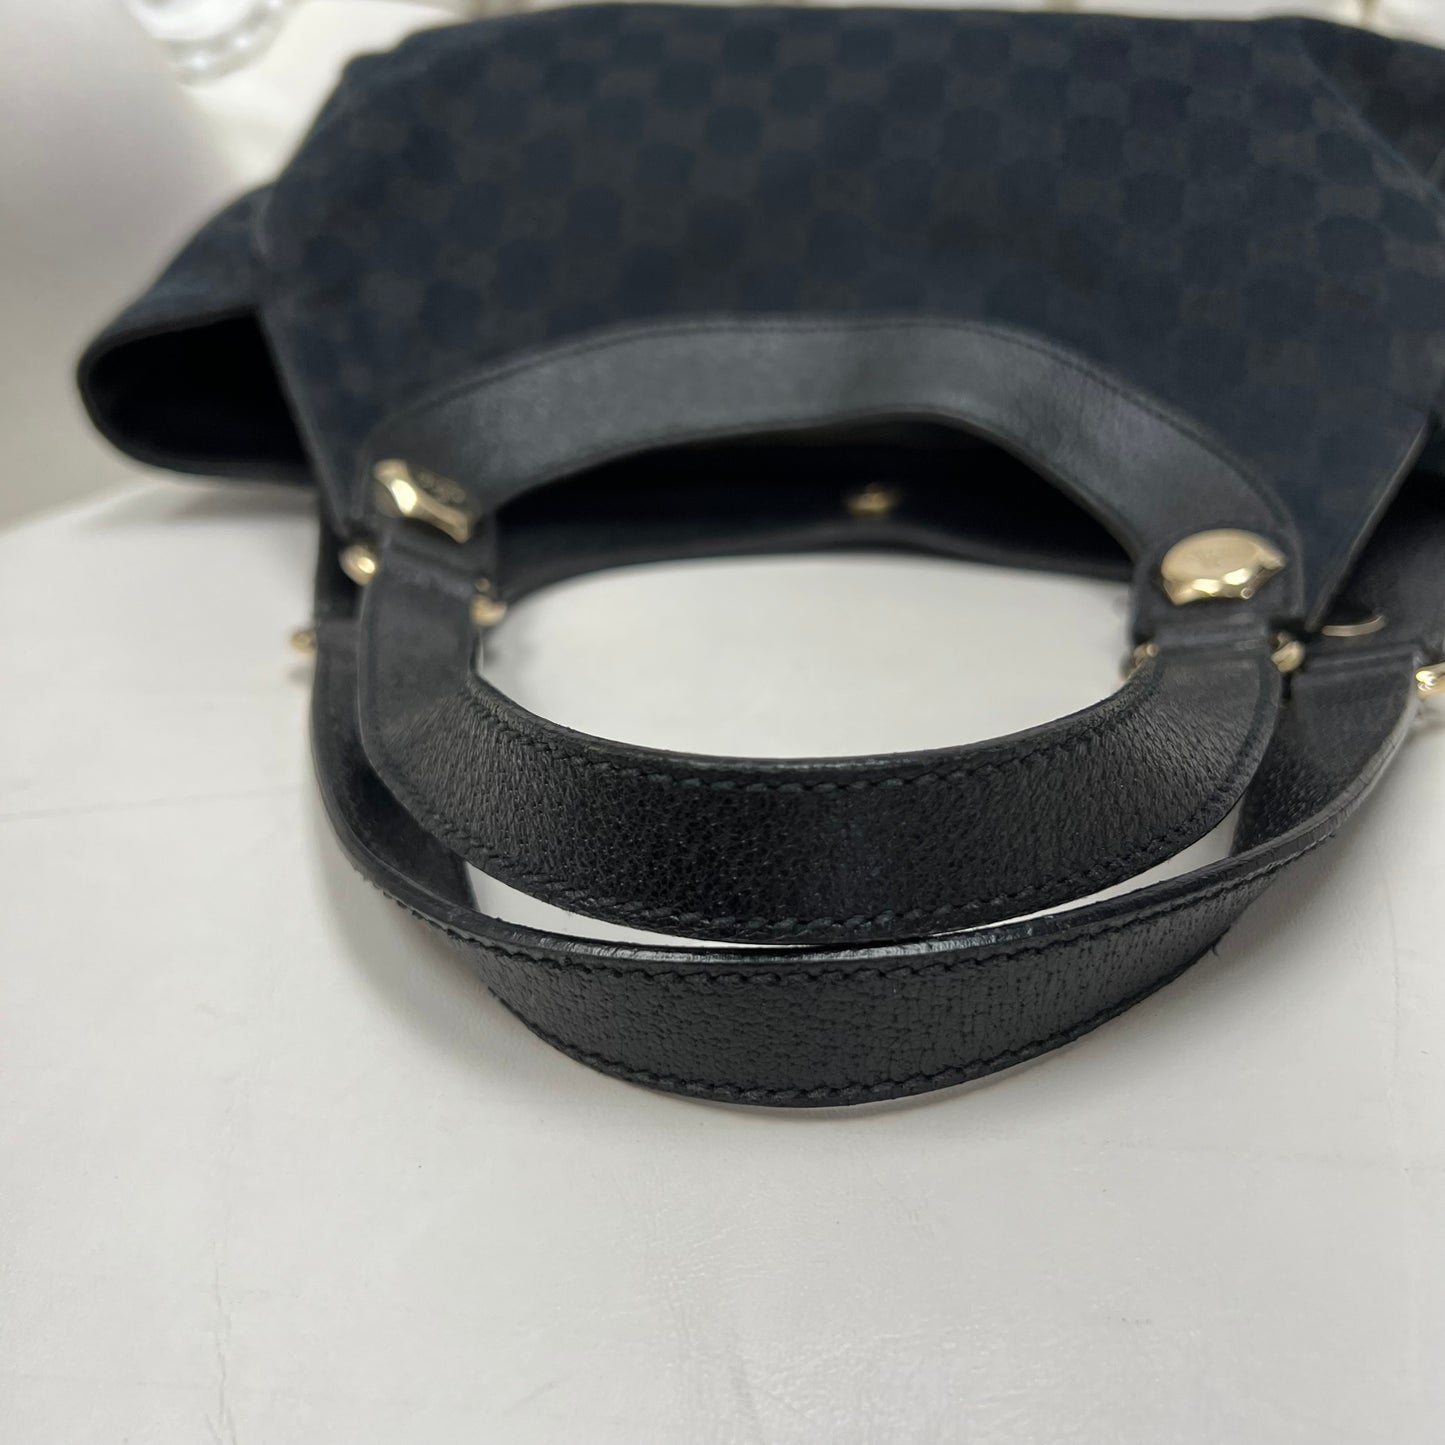 Gucci Black GG Shoulder Bag